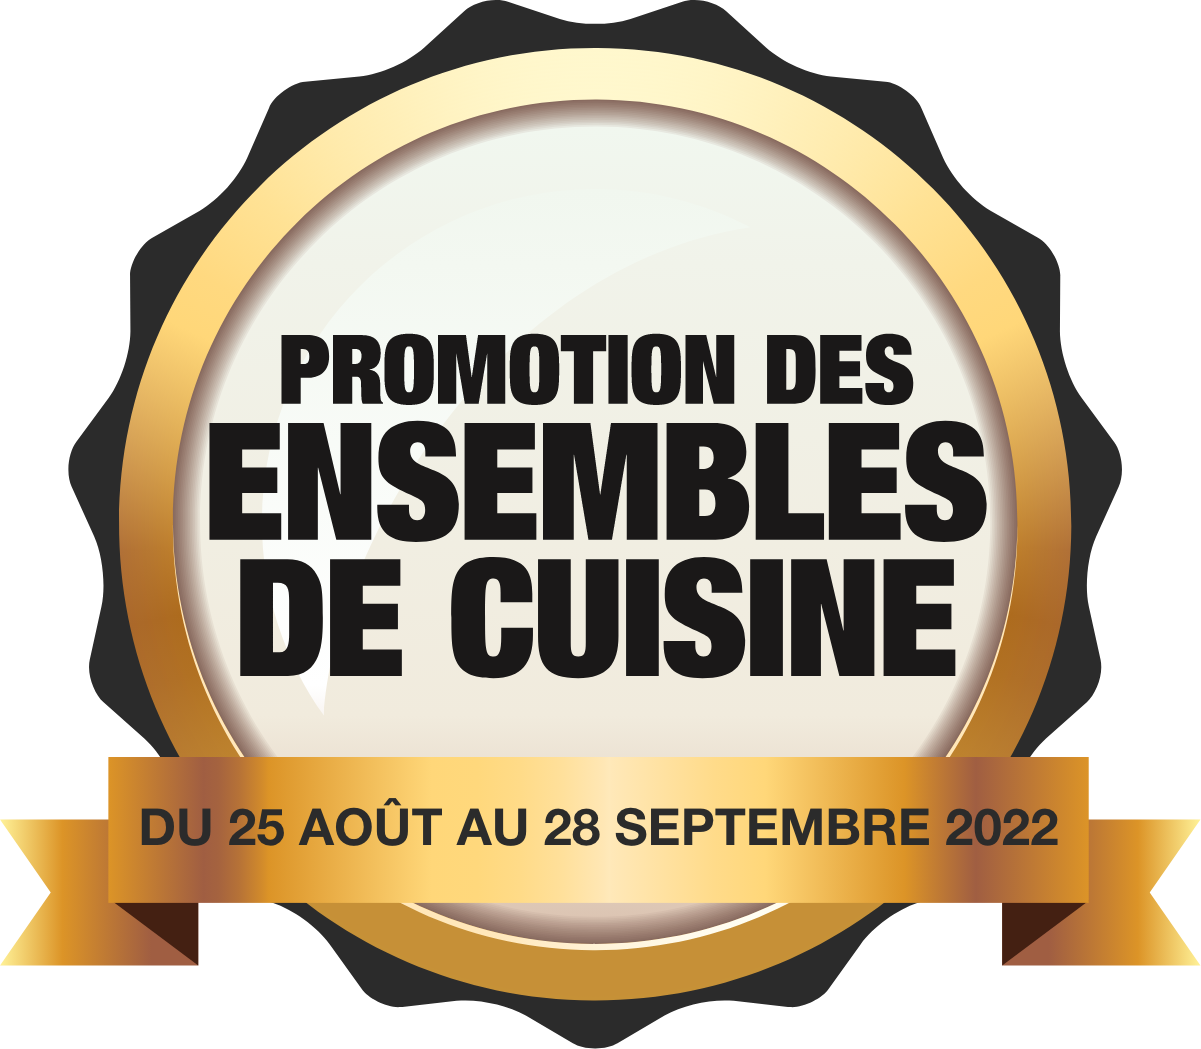 Promotion des ensembles de cuisine - Du 25 août au 28 septembre 2022